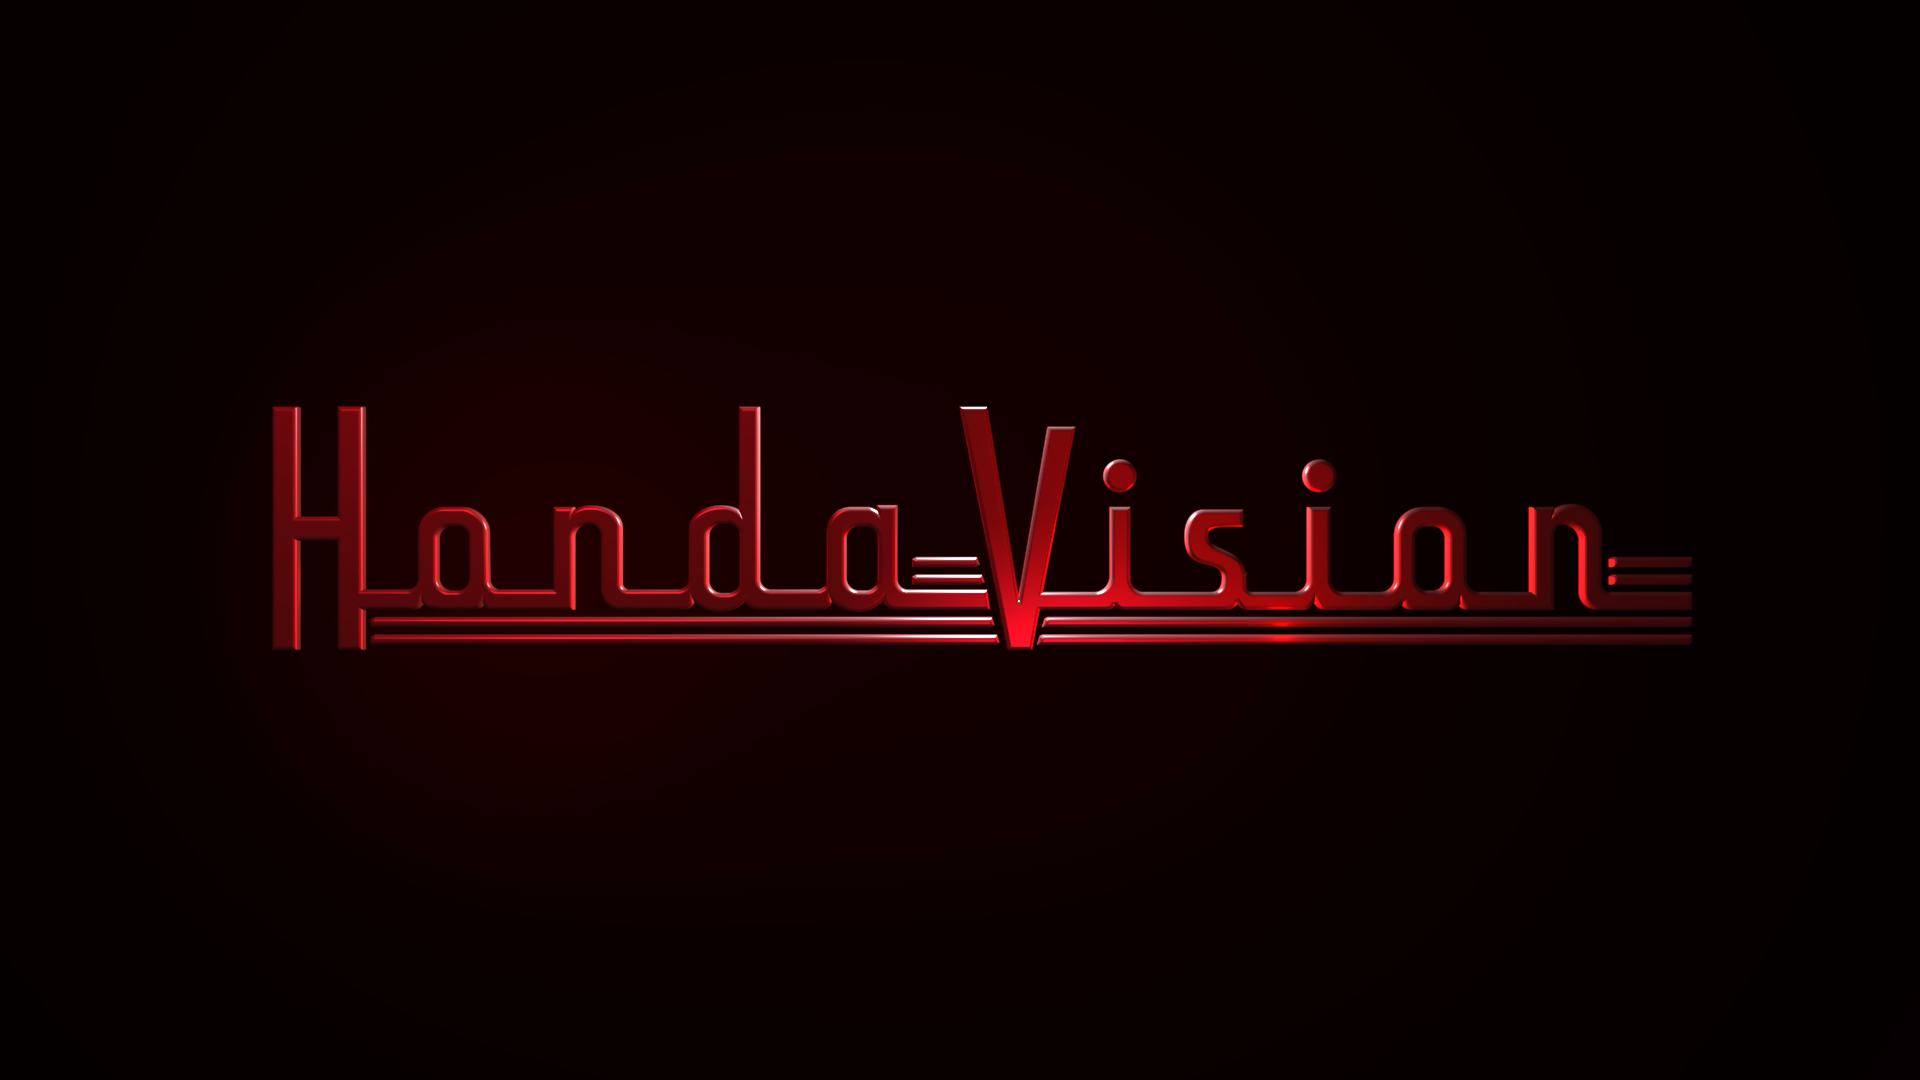 Honda Days Hondavision logo